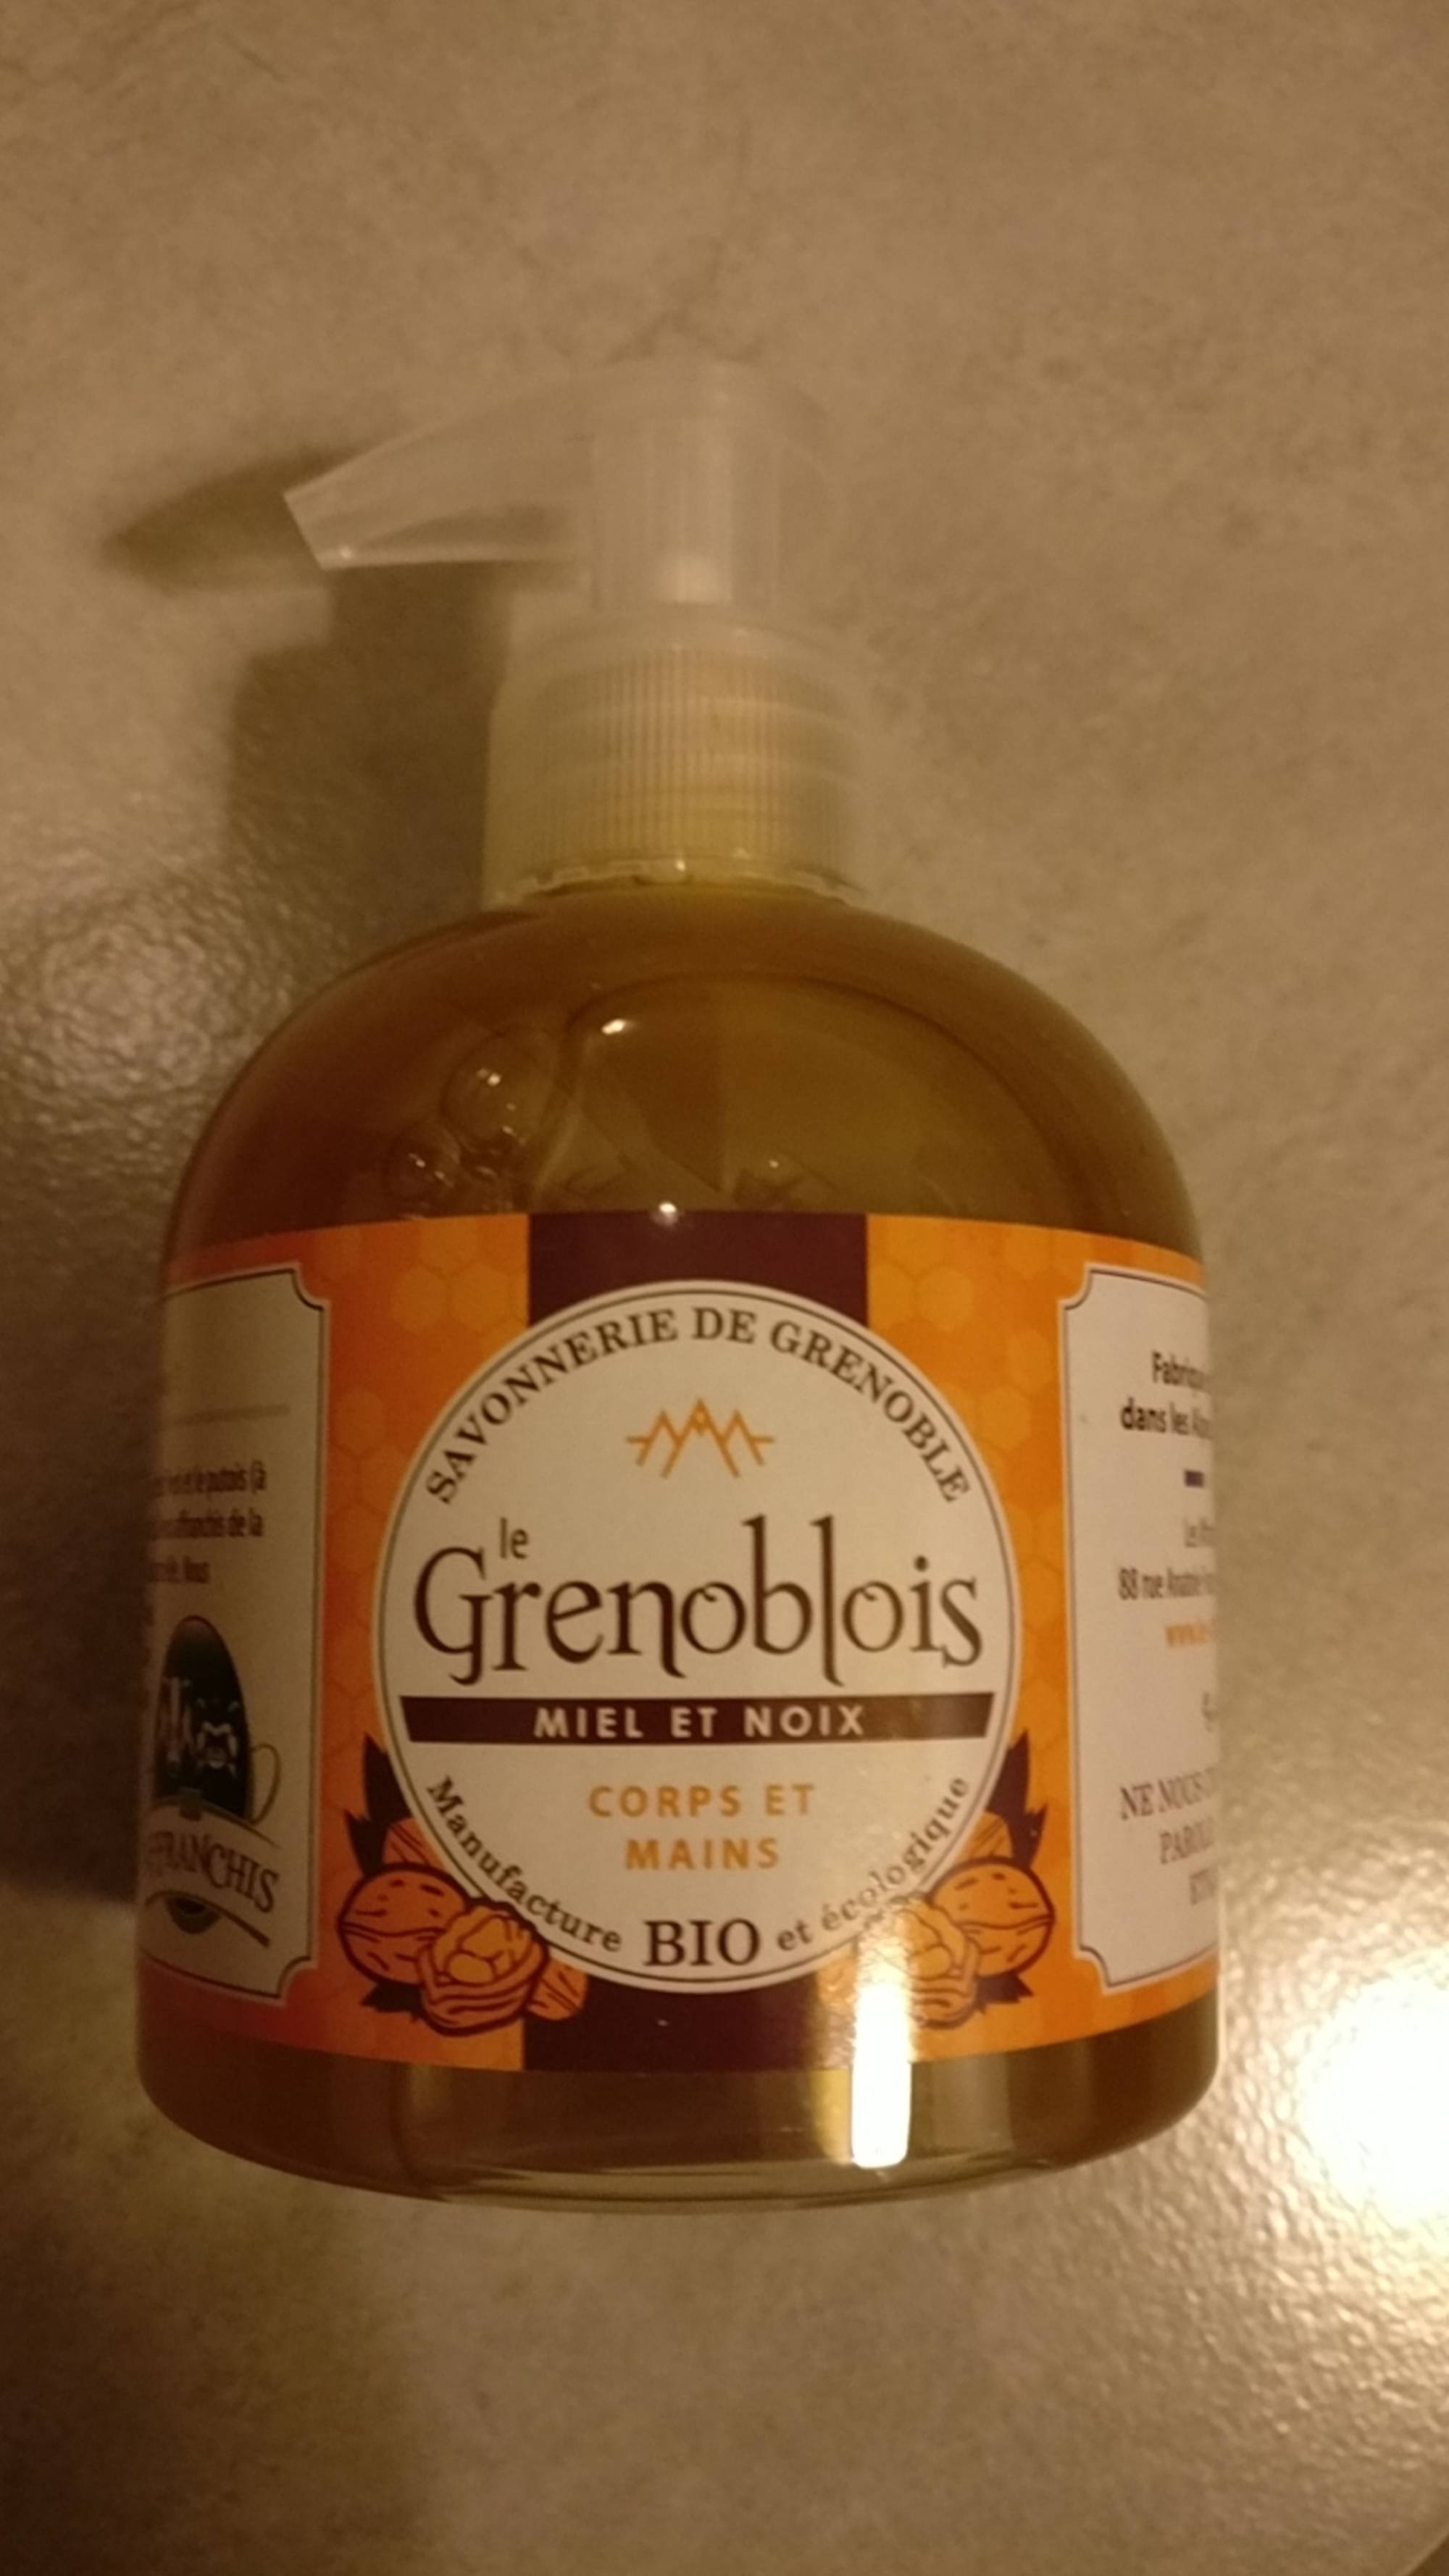 SAVONNERIE DE GRENOBLE - Le Grenoblois miel et noix - Savon corps et mains